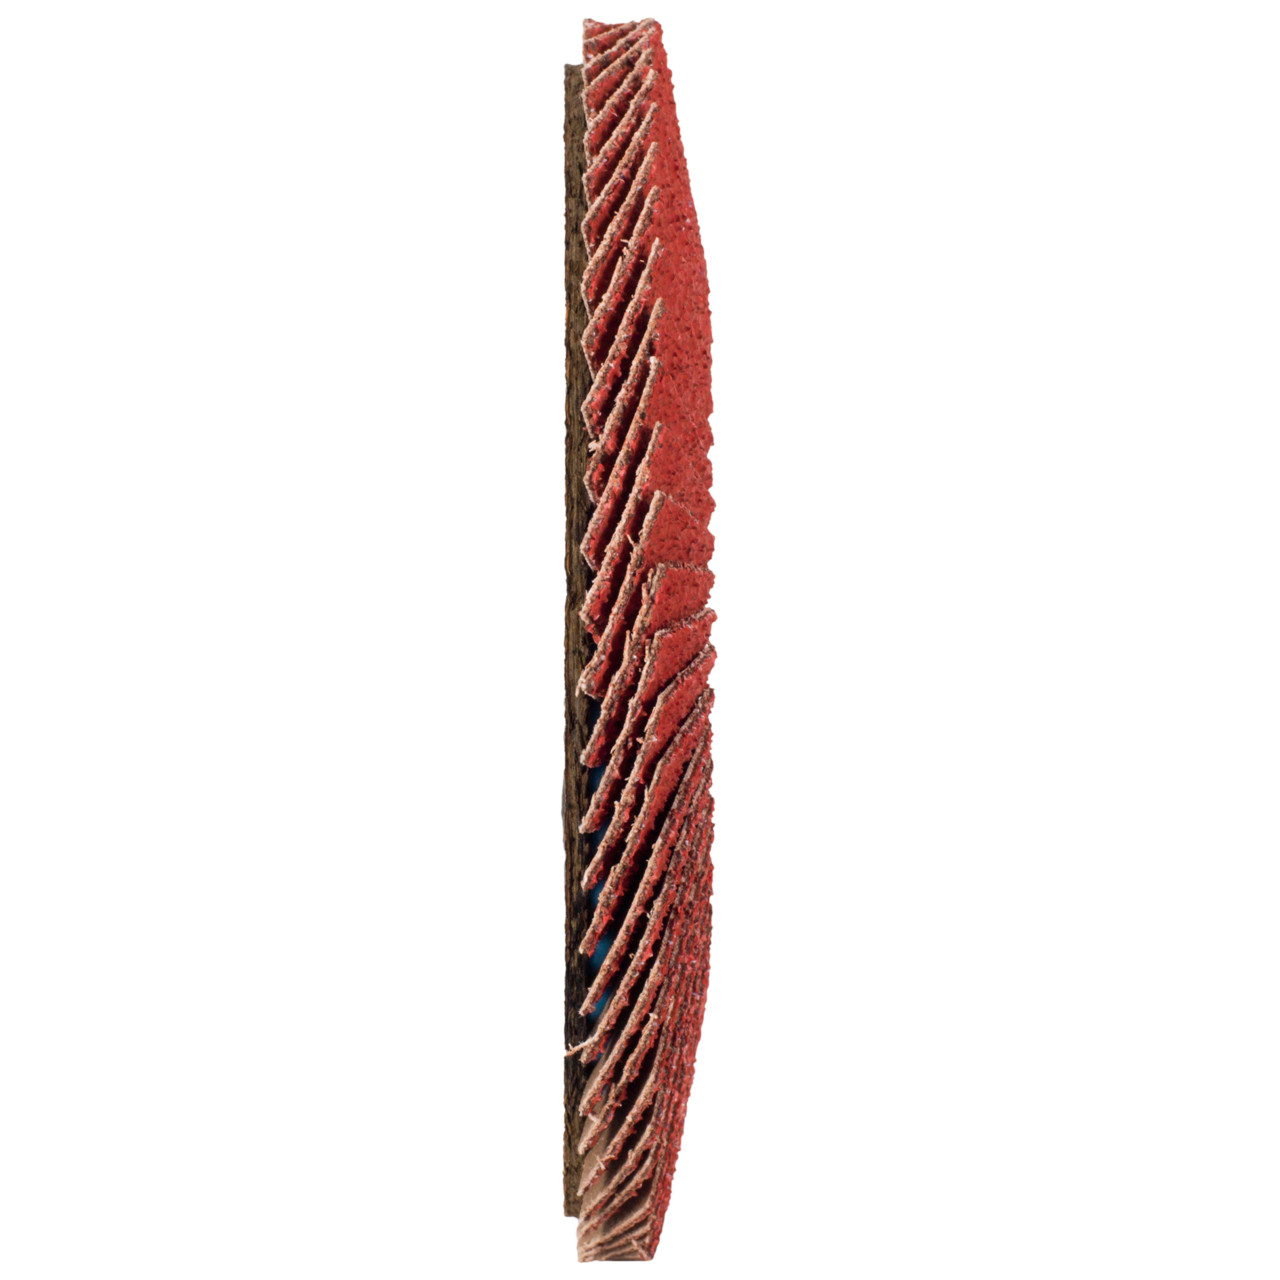 TYROLIT Rondelle éventail DxH 178x22,23 CERABOND Rondelle éventail pour acier inoxydable, P40, Forme : 28A - version droite (version corps support en fibre de verre), Art. 34166181